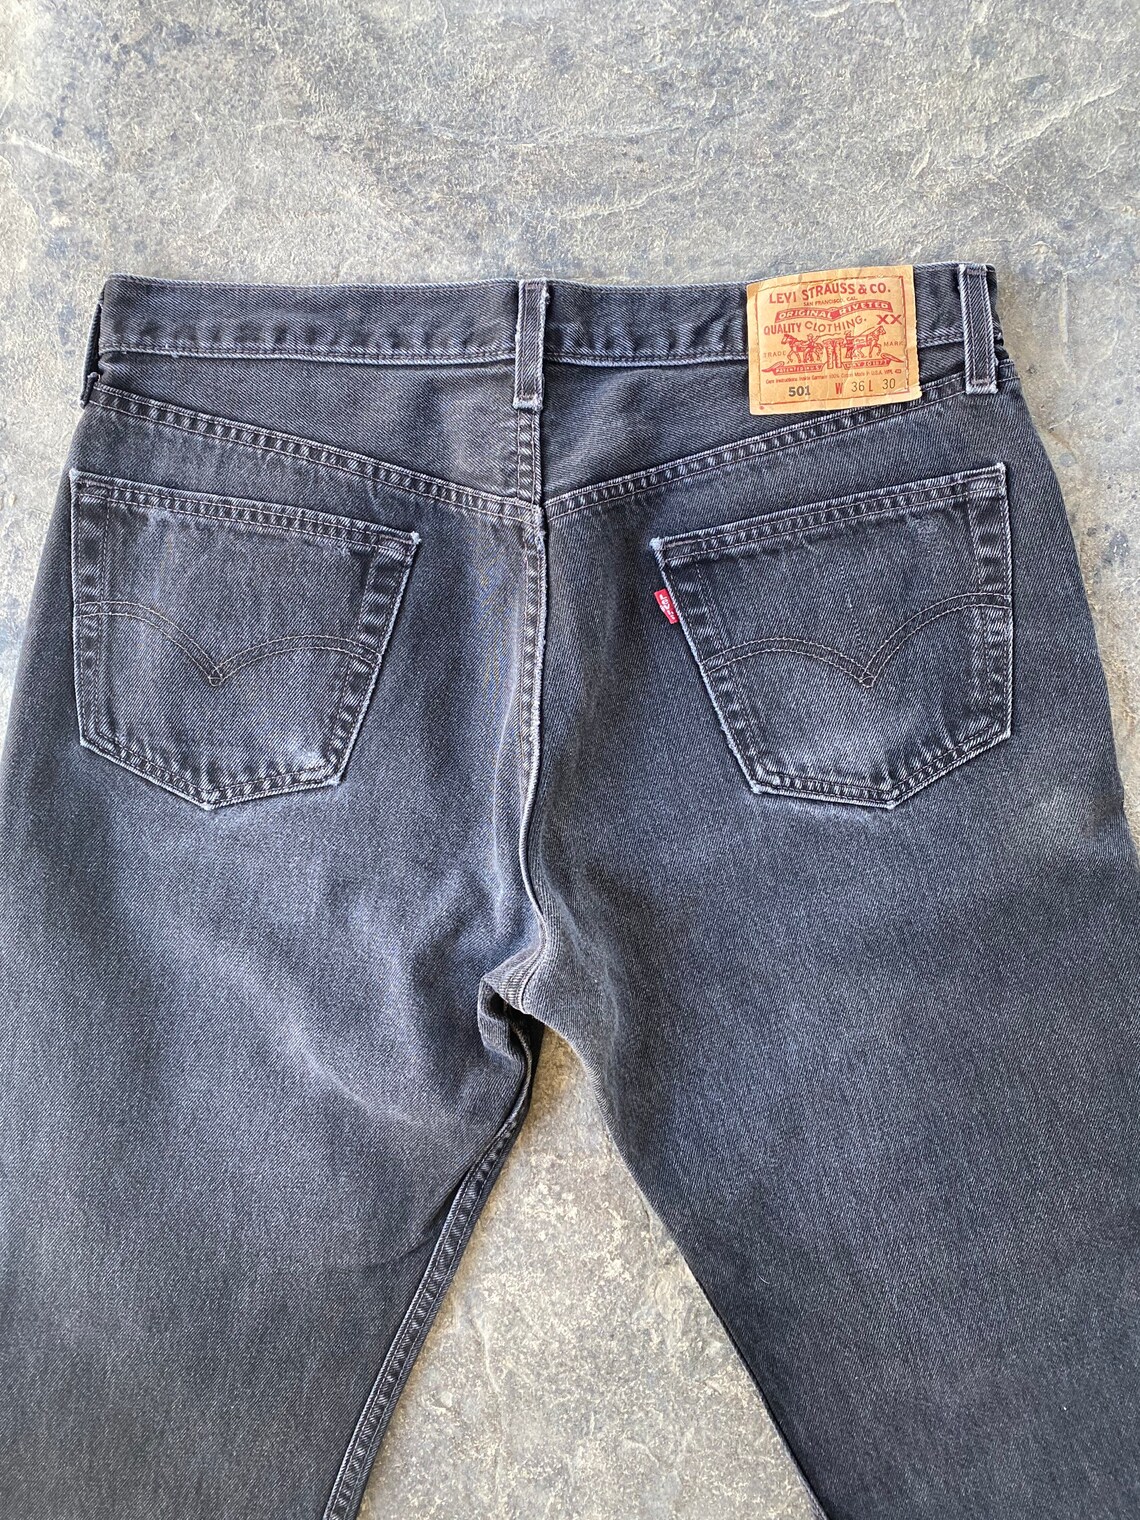 90s Levis 501 XX Jeans Black Vintage 35 | Etsy